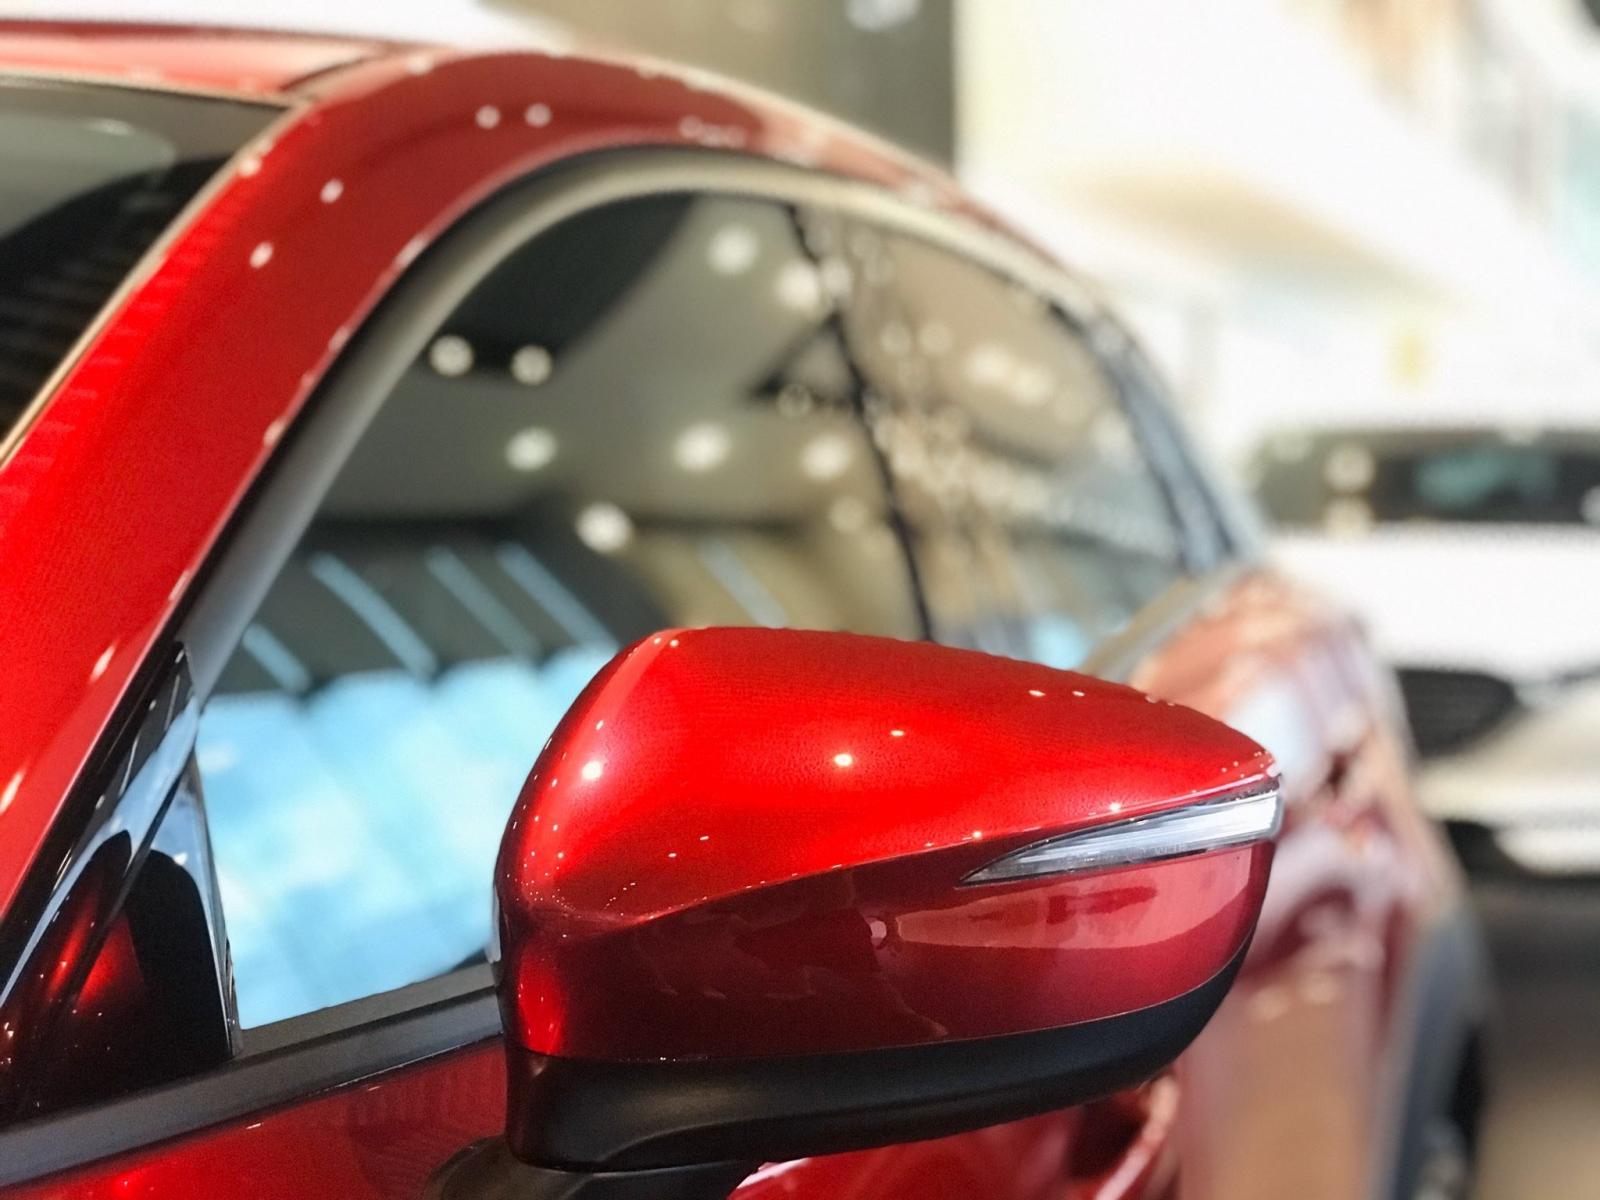 gương chiếu hậu tích ăn ý đèn báo rẽ đường LED bên trên Mazda CX-3.